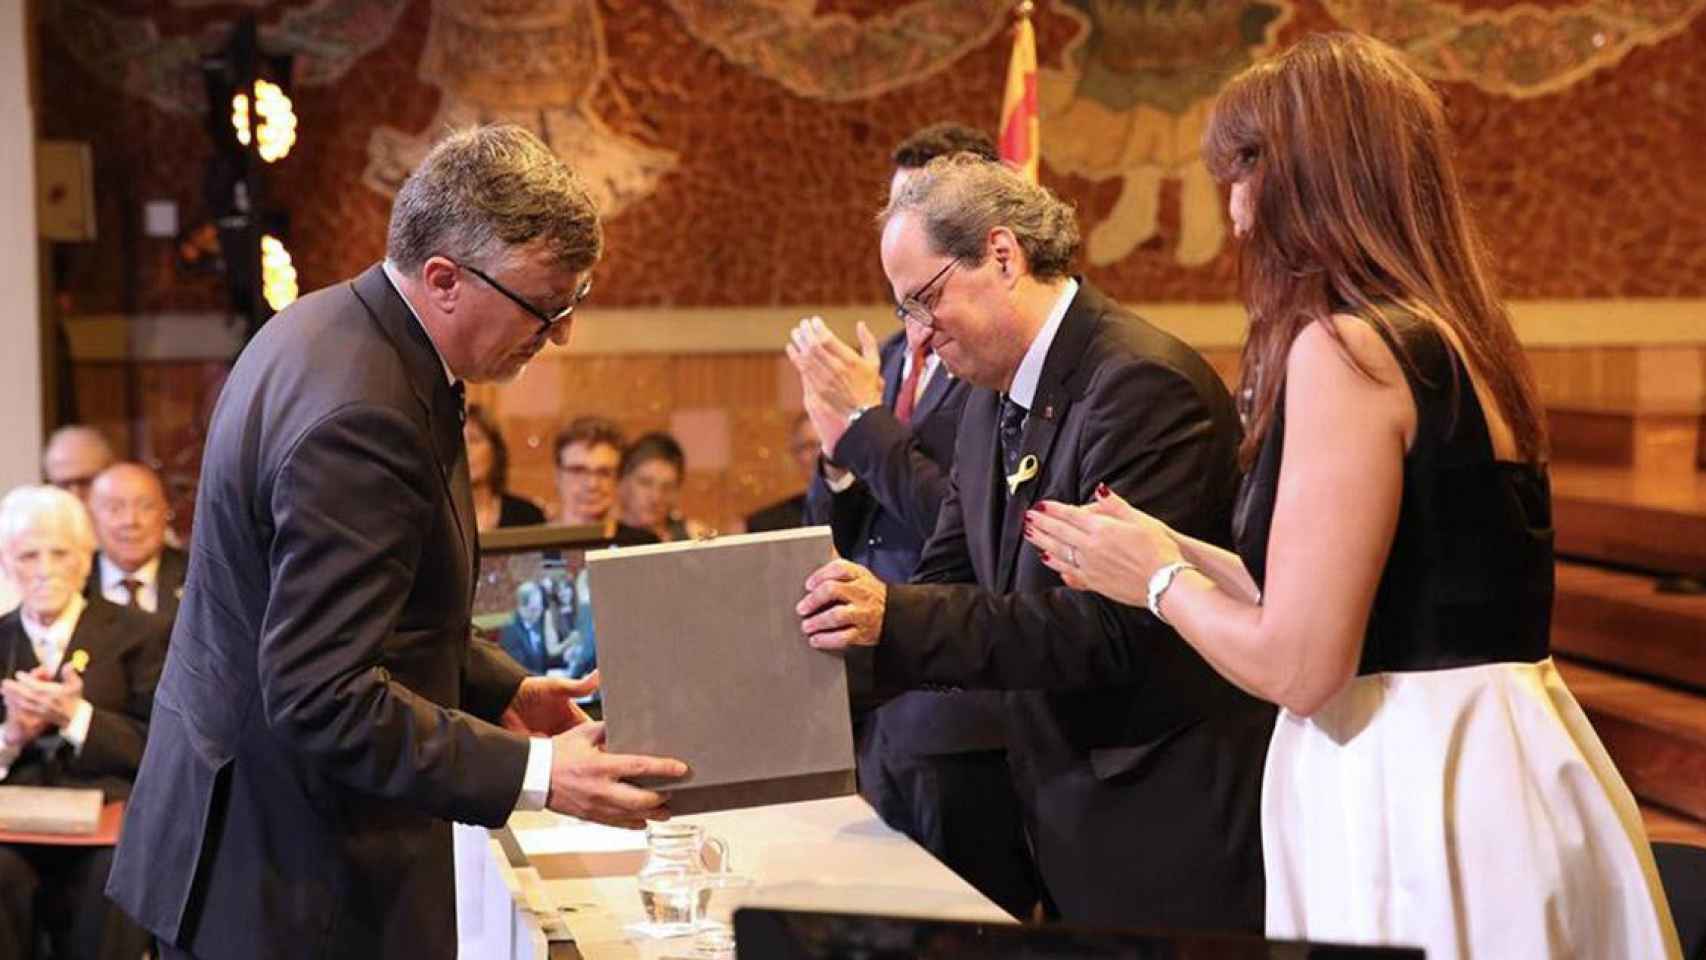 Quim Torra otorga la Creu de Sant Jordi a Carles Salvadó, expresidente de la Fundació puntCAT / GENCAT